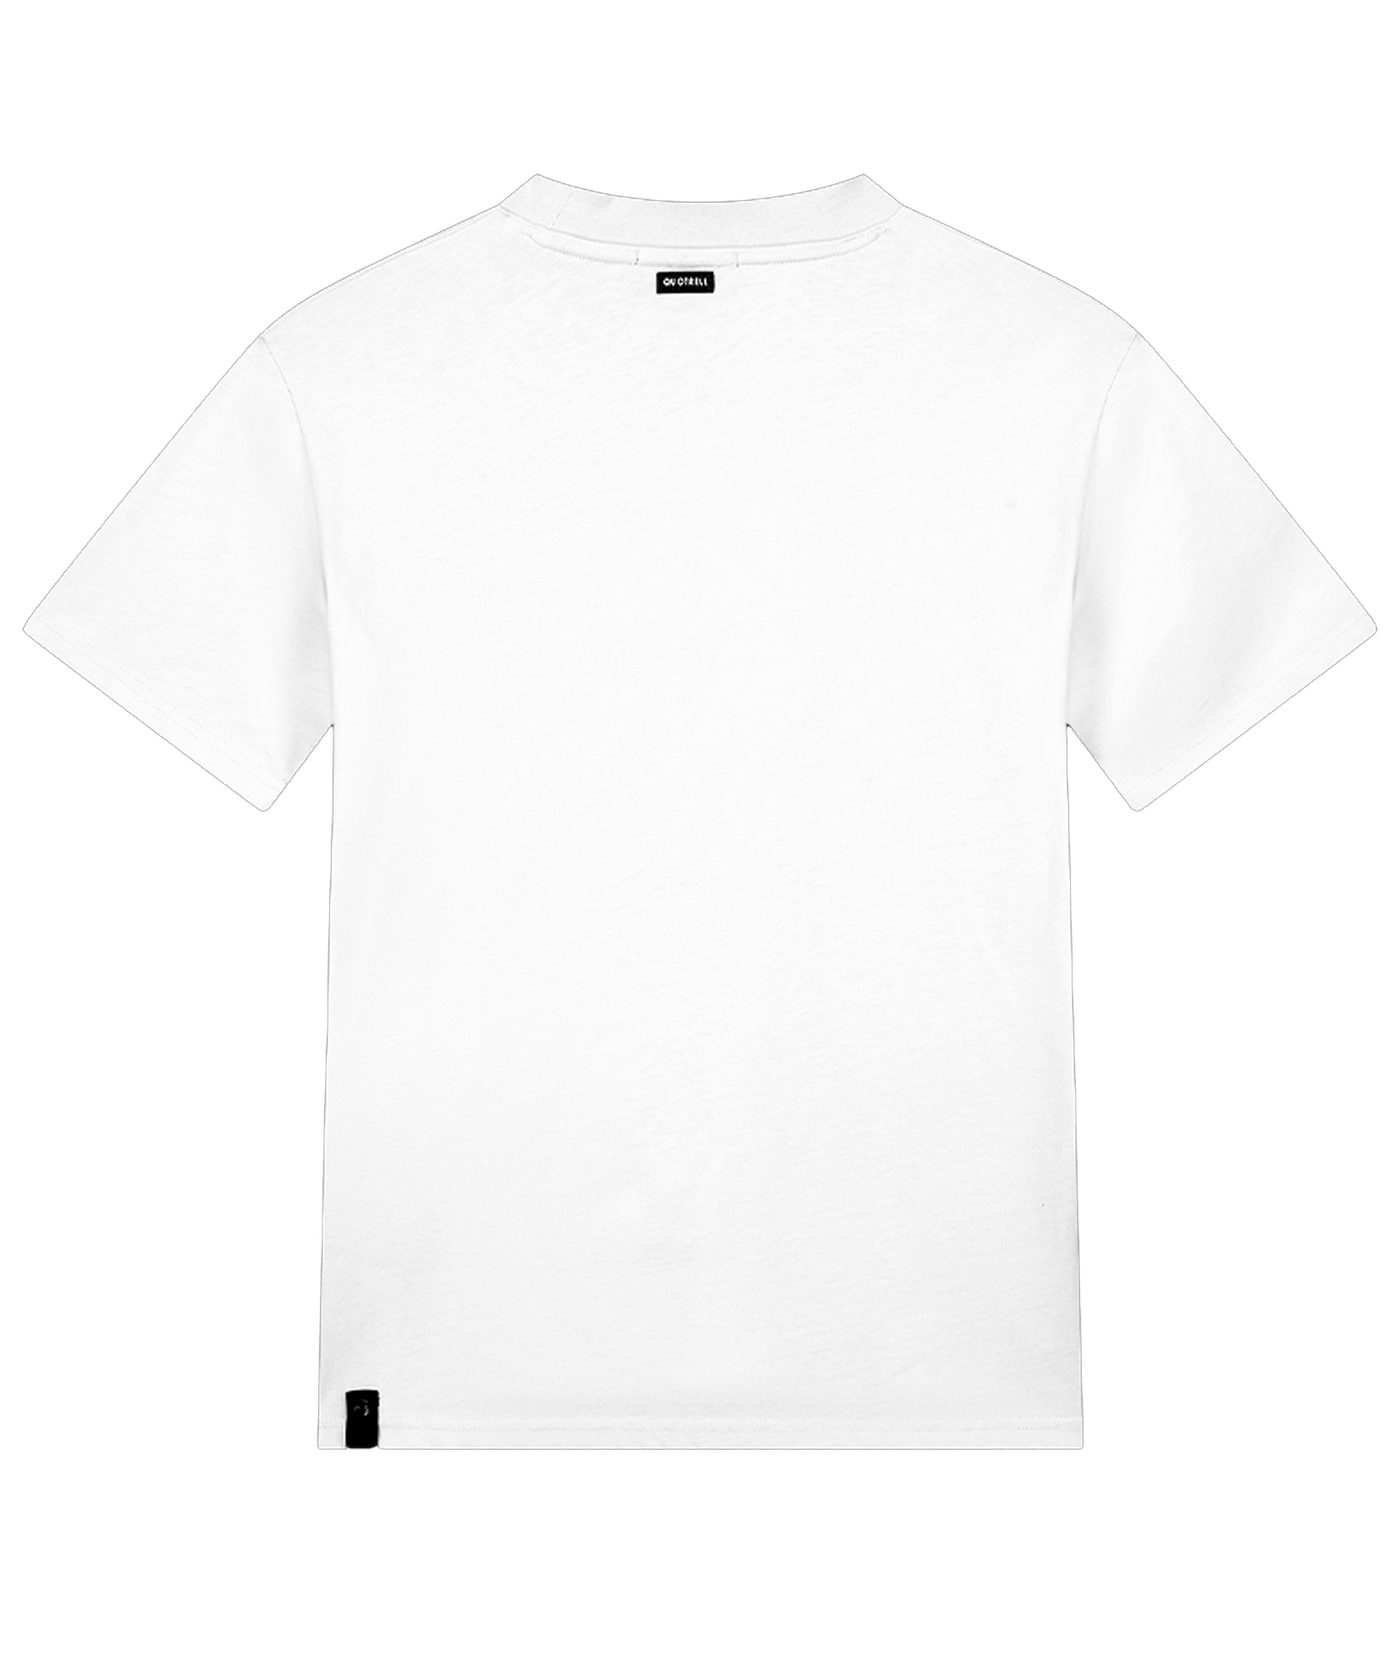 Quotrell - L' Atelier - T-shirt - White/black